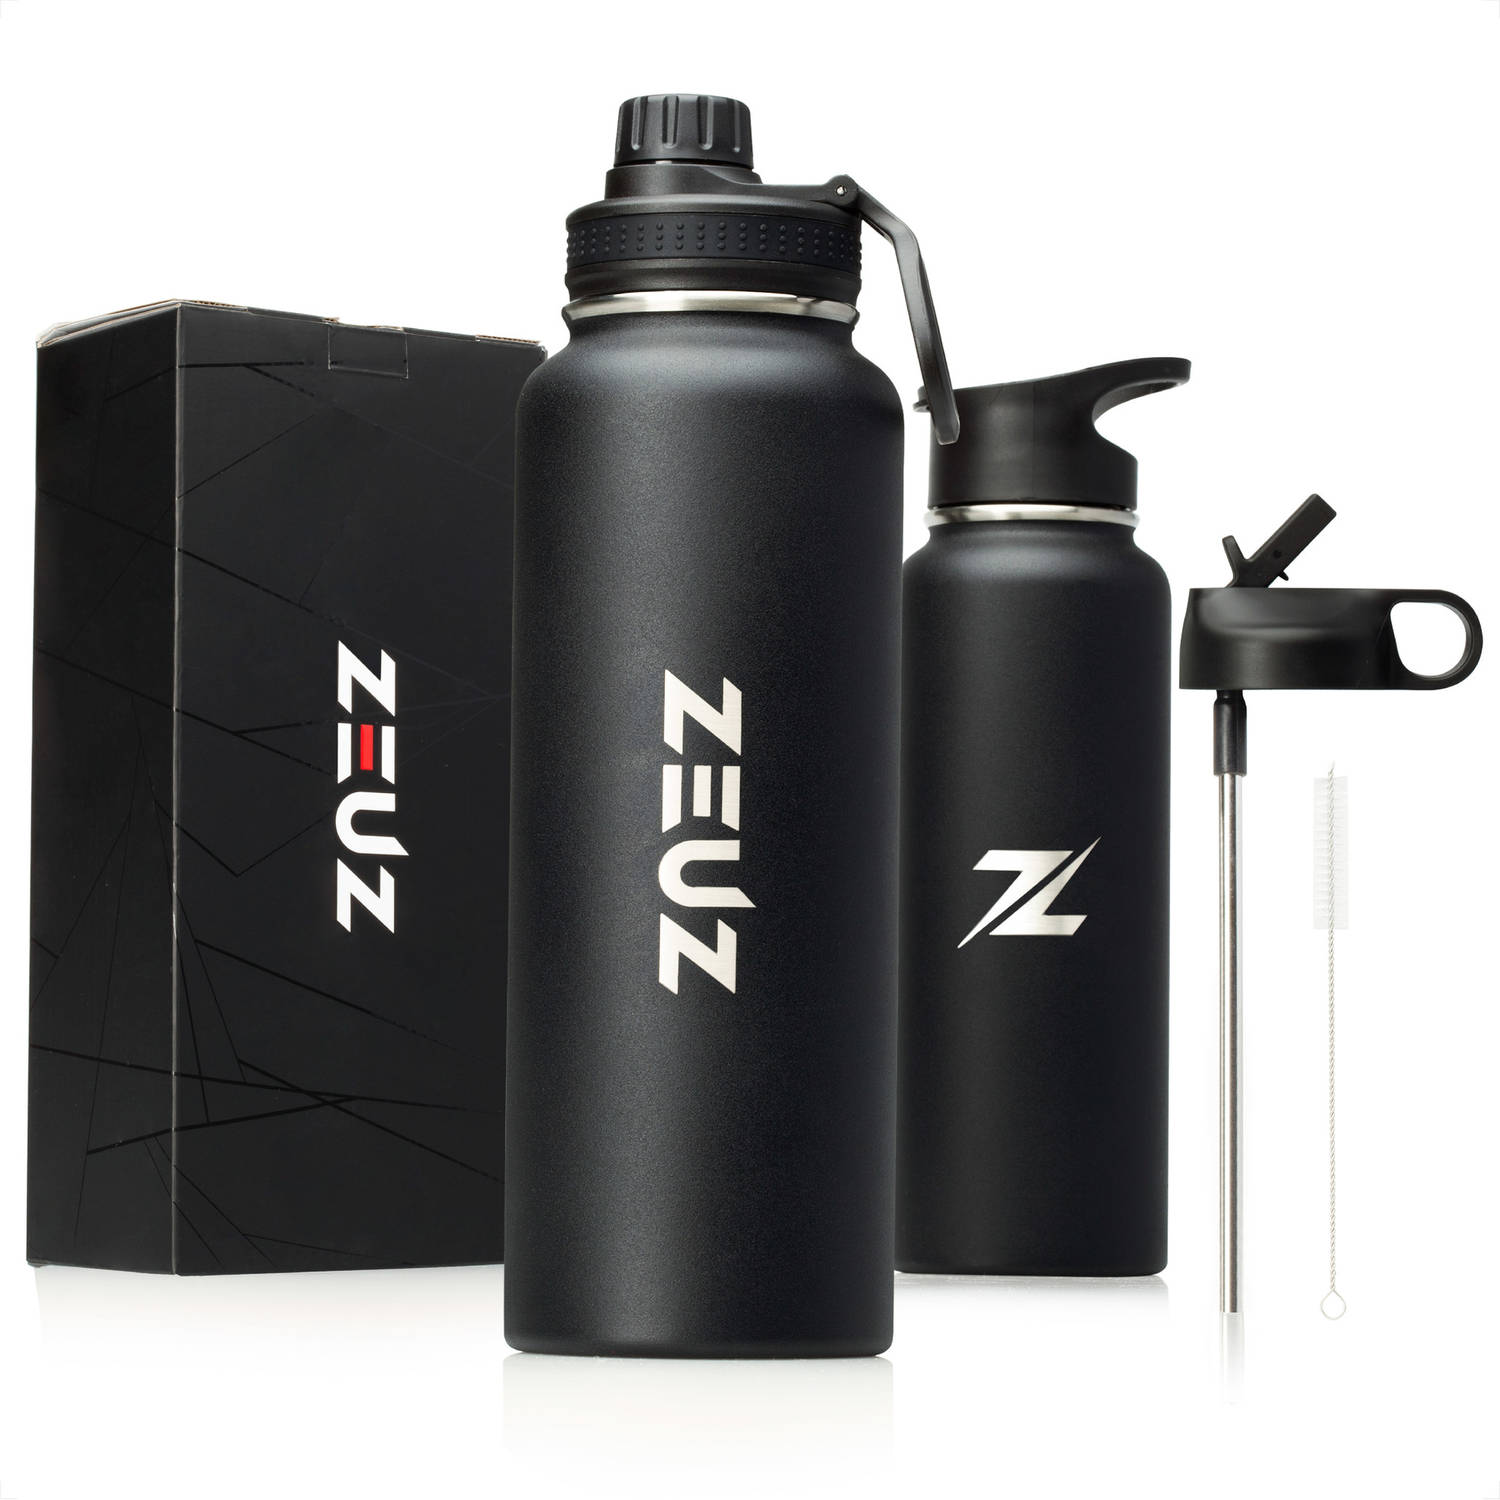 ZEUZ® Premium RVS Thermosfles & Drinkfles - Waterfles met Rietje - Isoleerfles- 1200 ml/ 1, 2 Liter- Mat Zwart